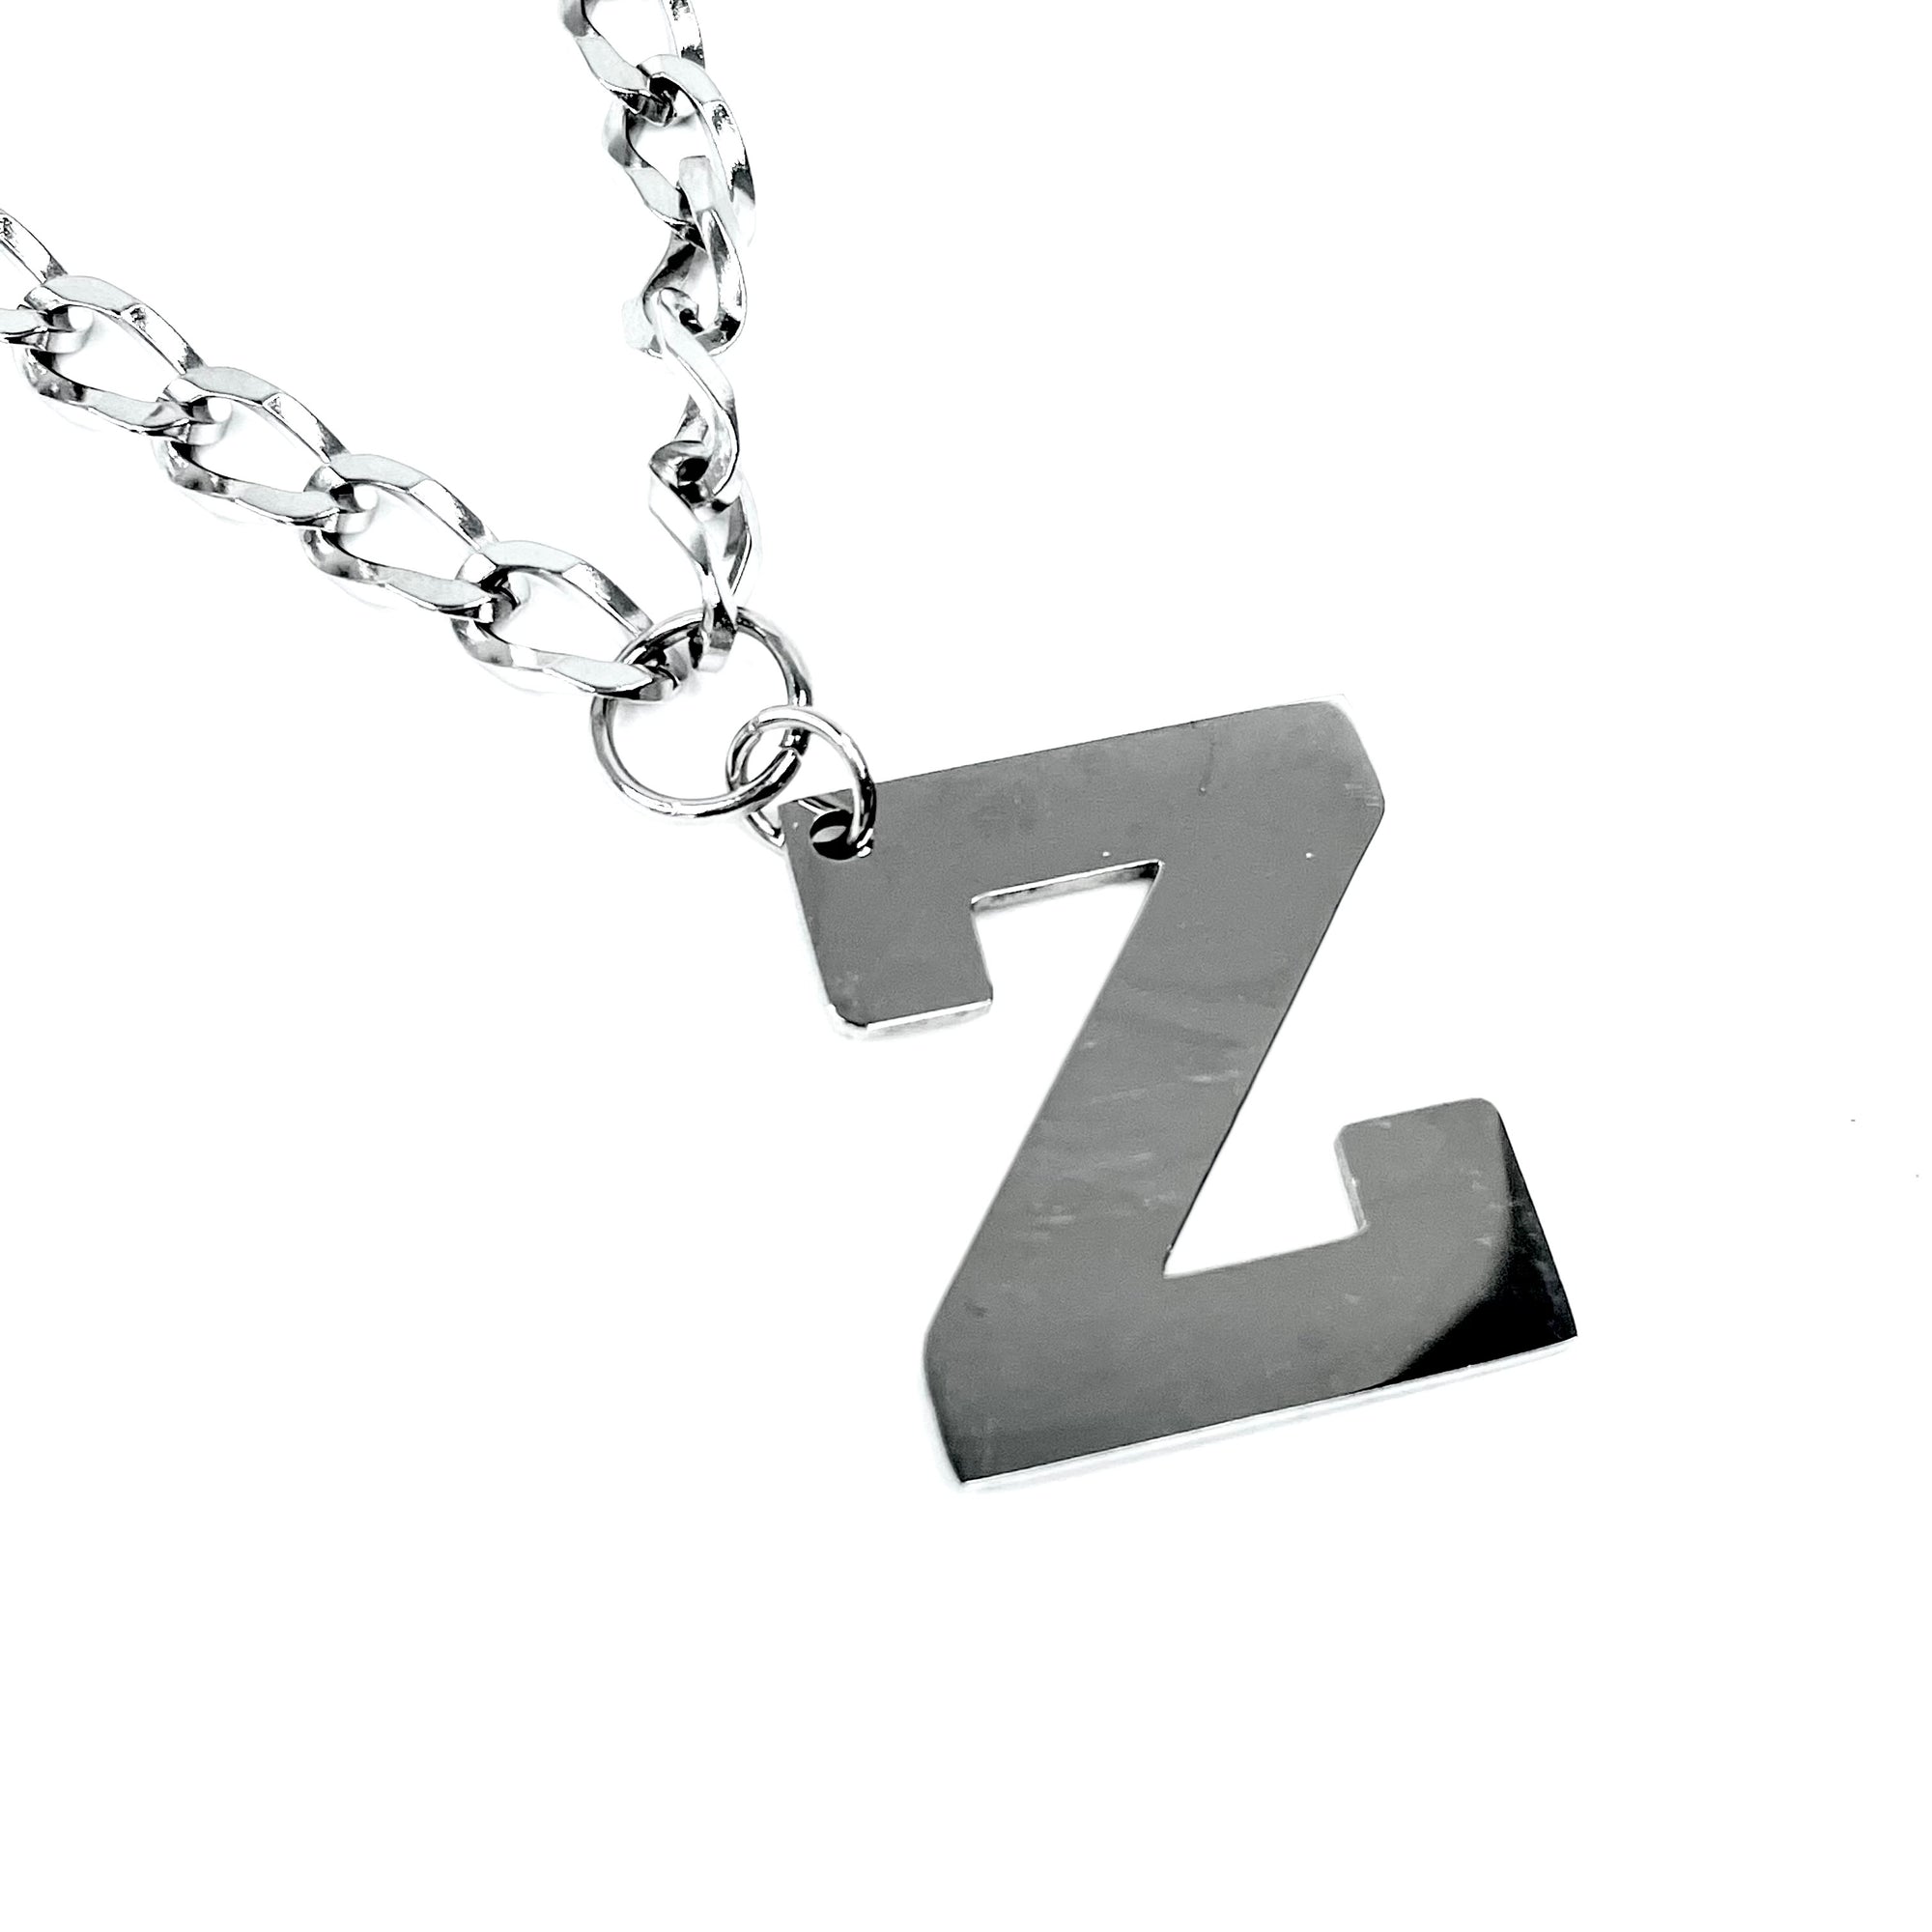 Lettering Legend Necklace Necklaces Cerese D, Inc. Silver Z 